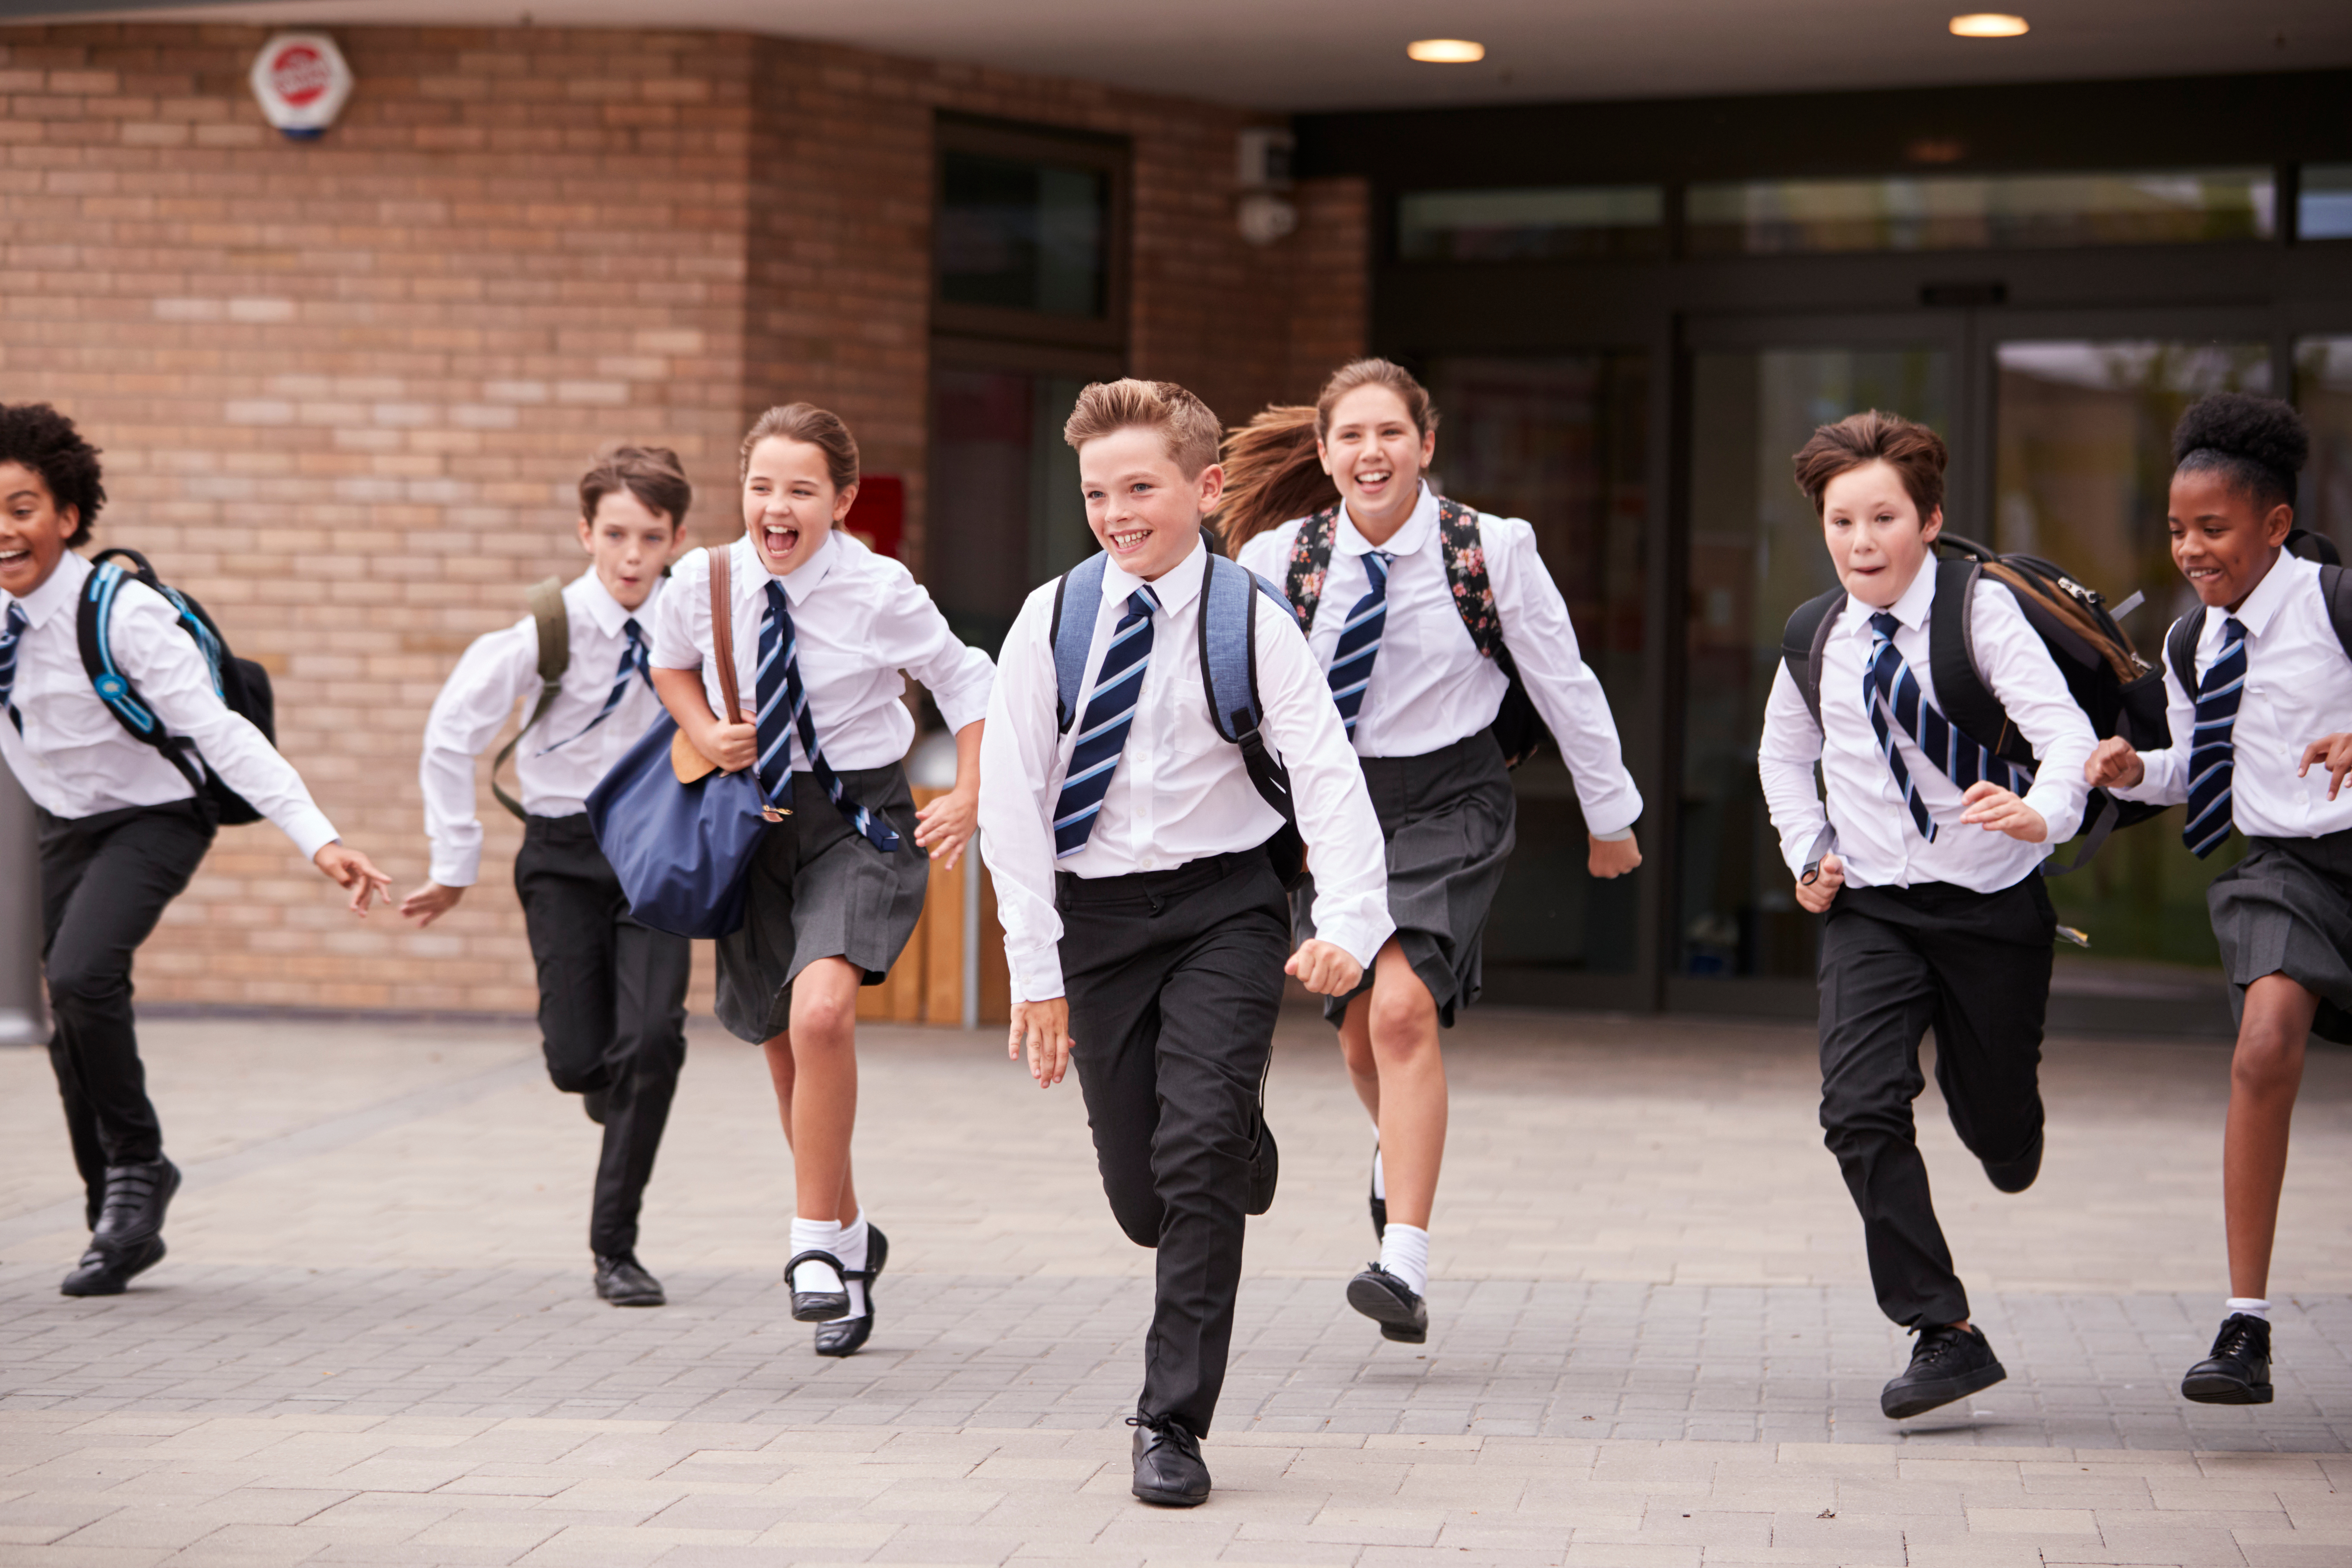 Un groupe d'élèves en uniforme scolaire. | Source : Shutterstock